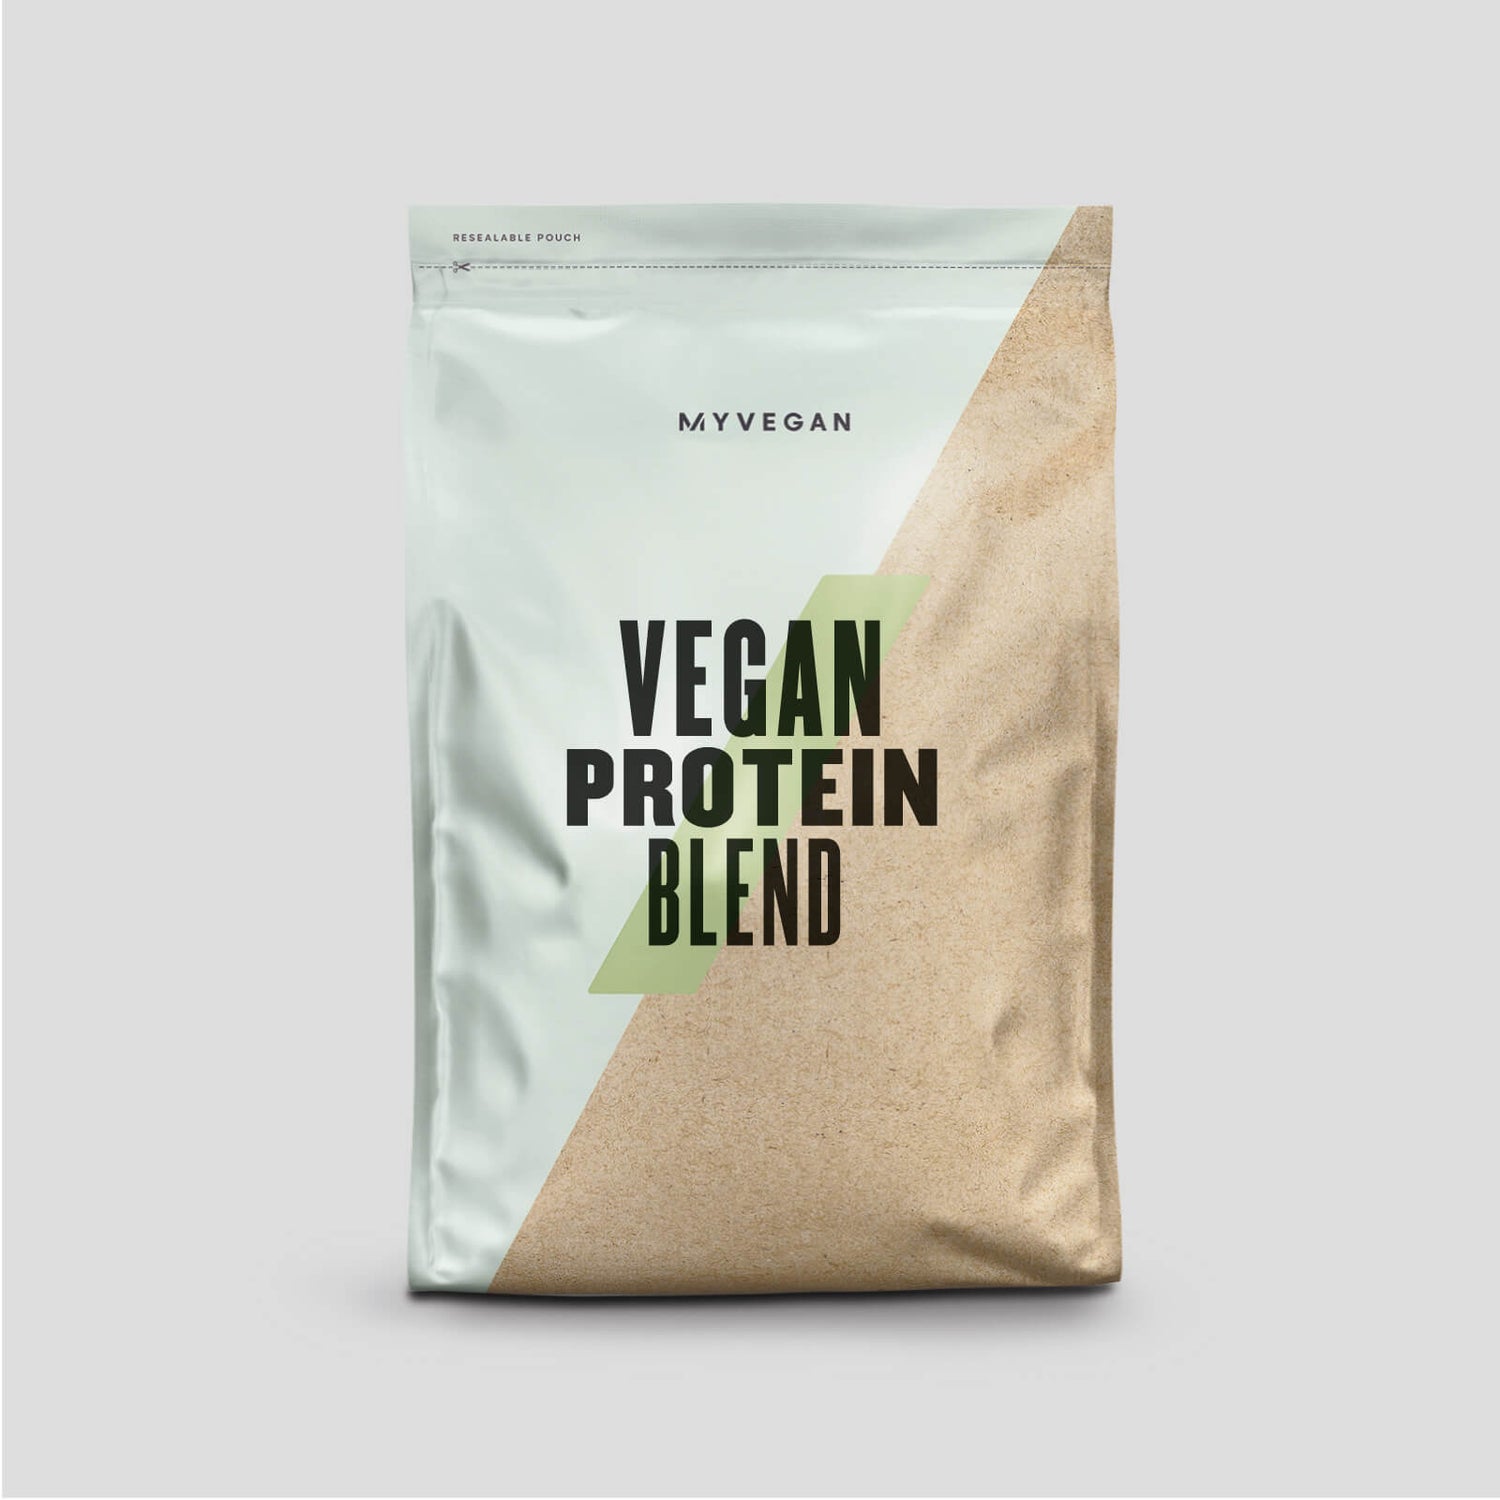 Mezcla de Proteína Vegana - 1kg - Cafe y Nueces